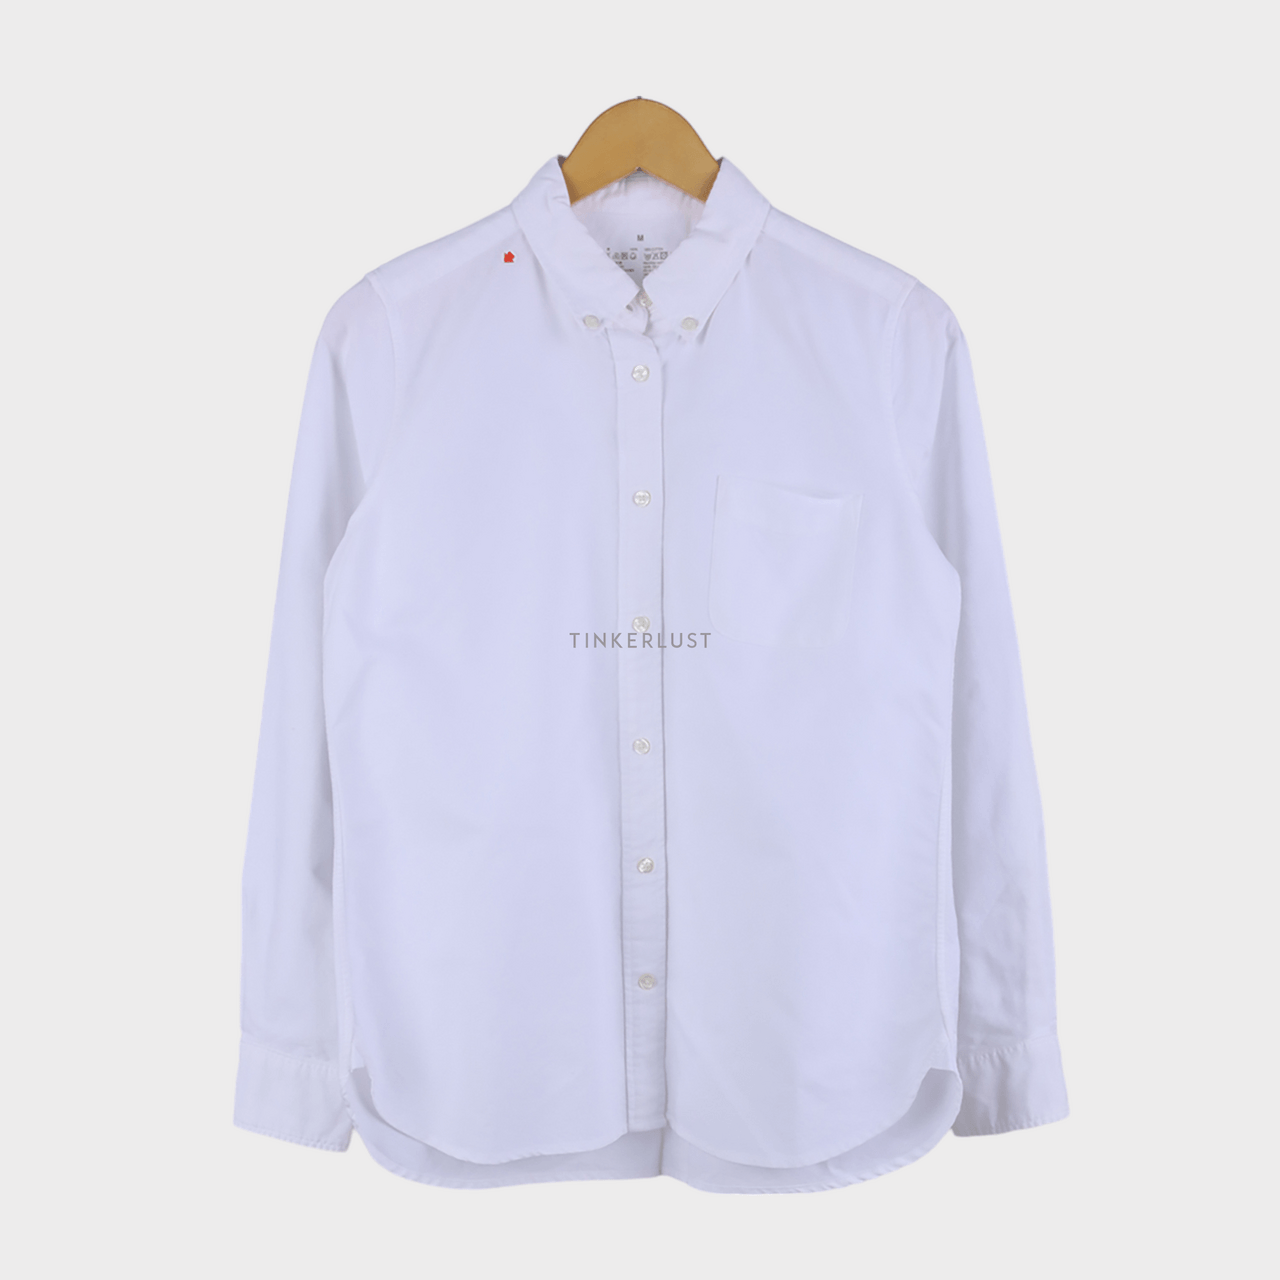 Muji White Shirt